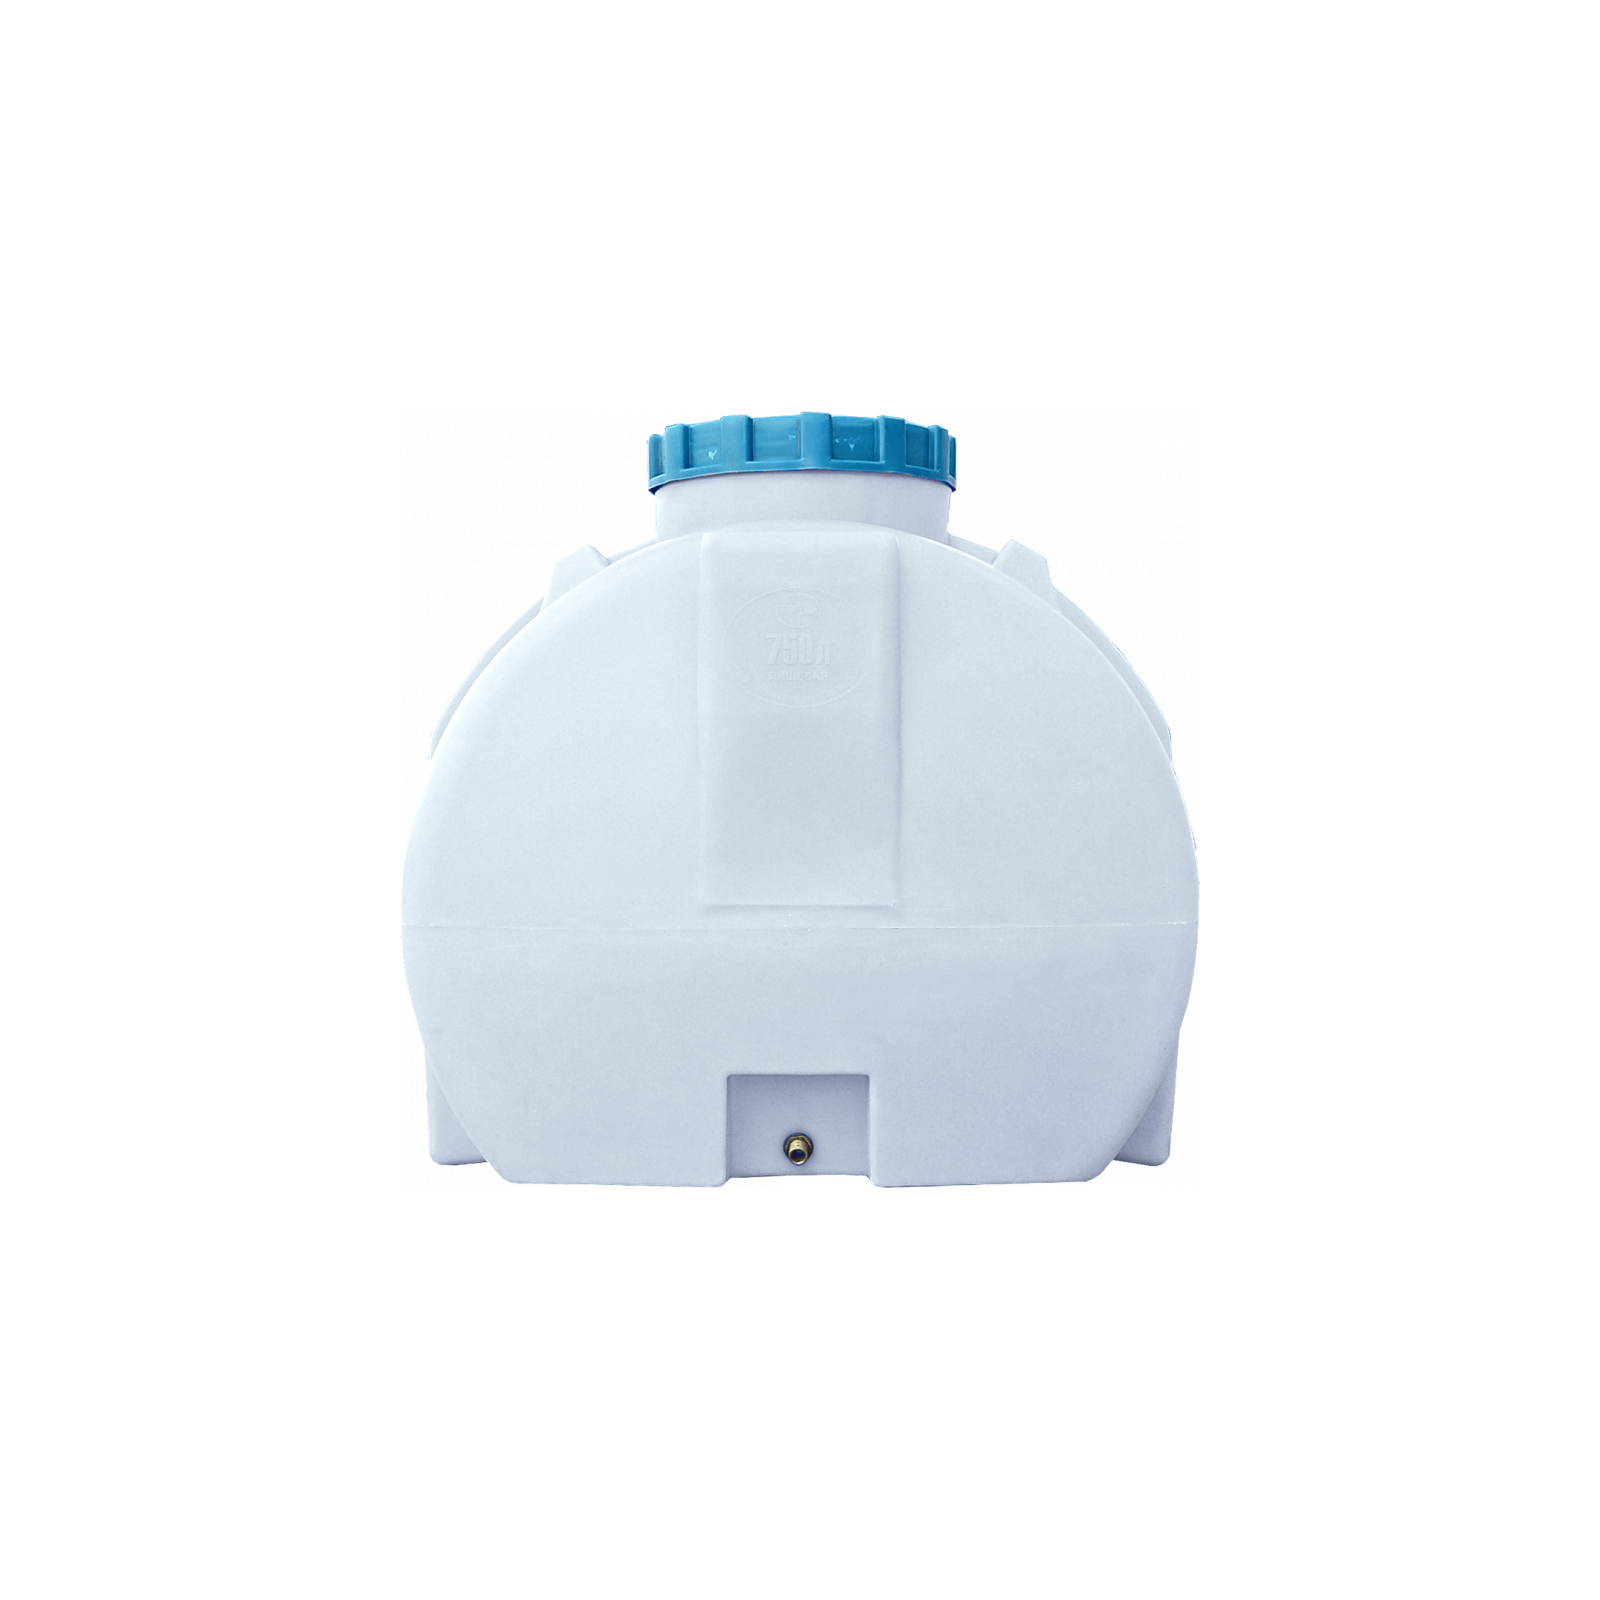 Емкость для воды Пласт Бак горизонтальная пищевая 100 л синяя (12460) изображение 2